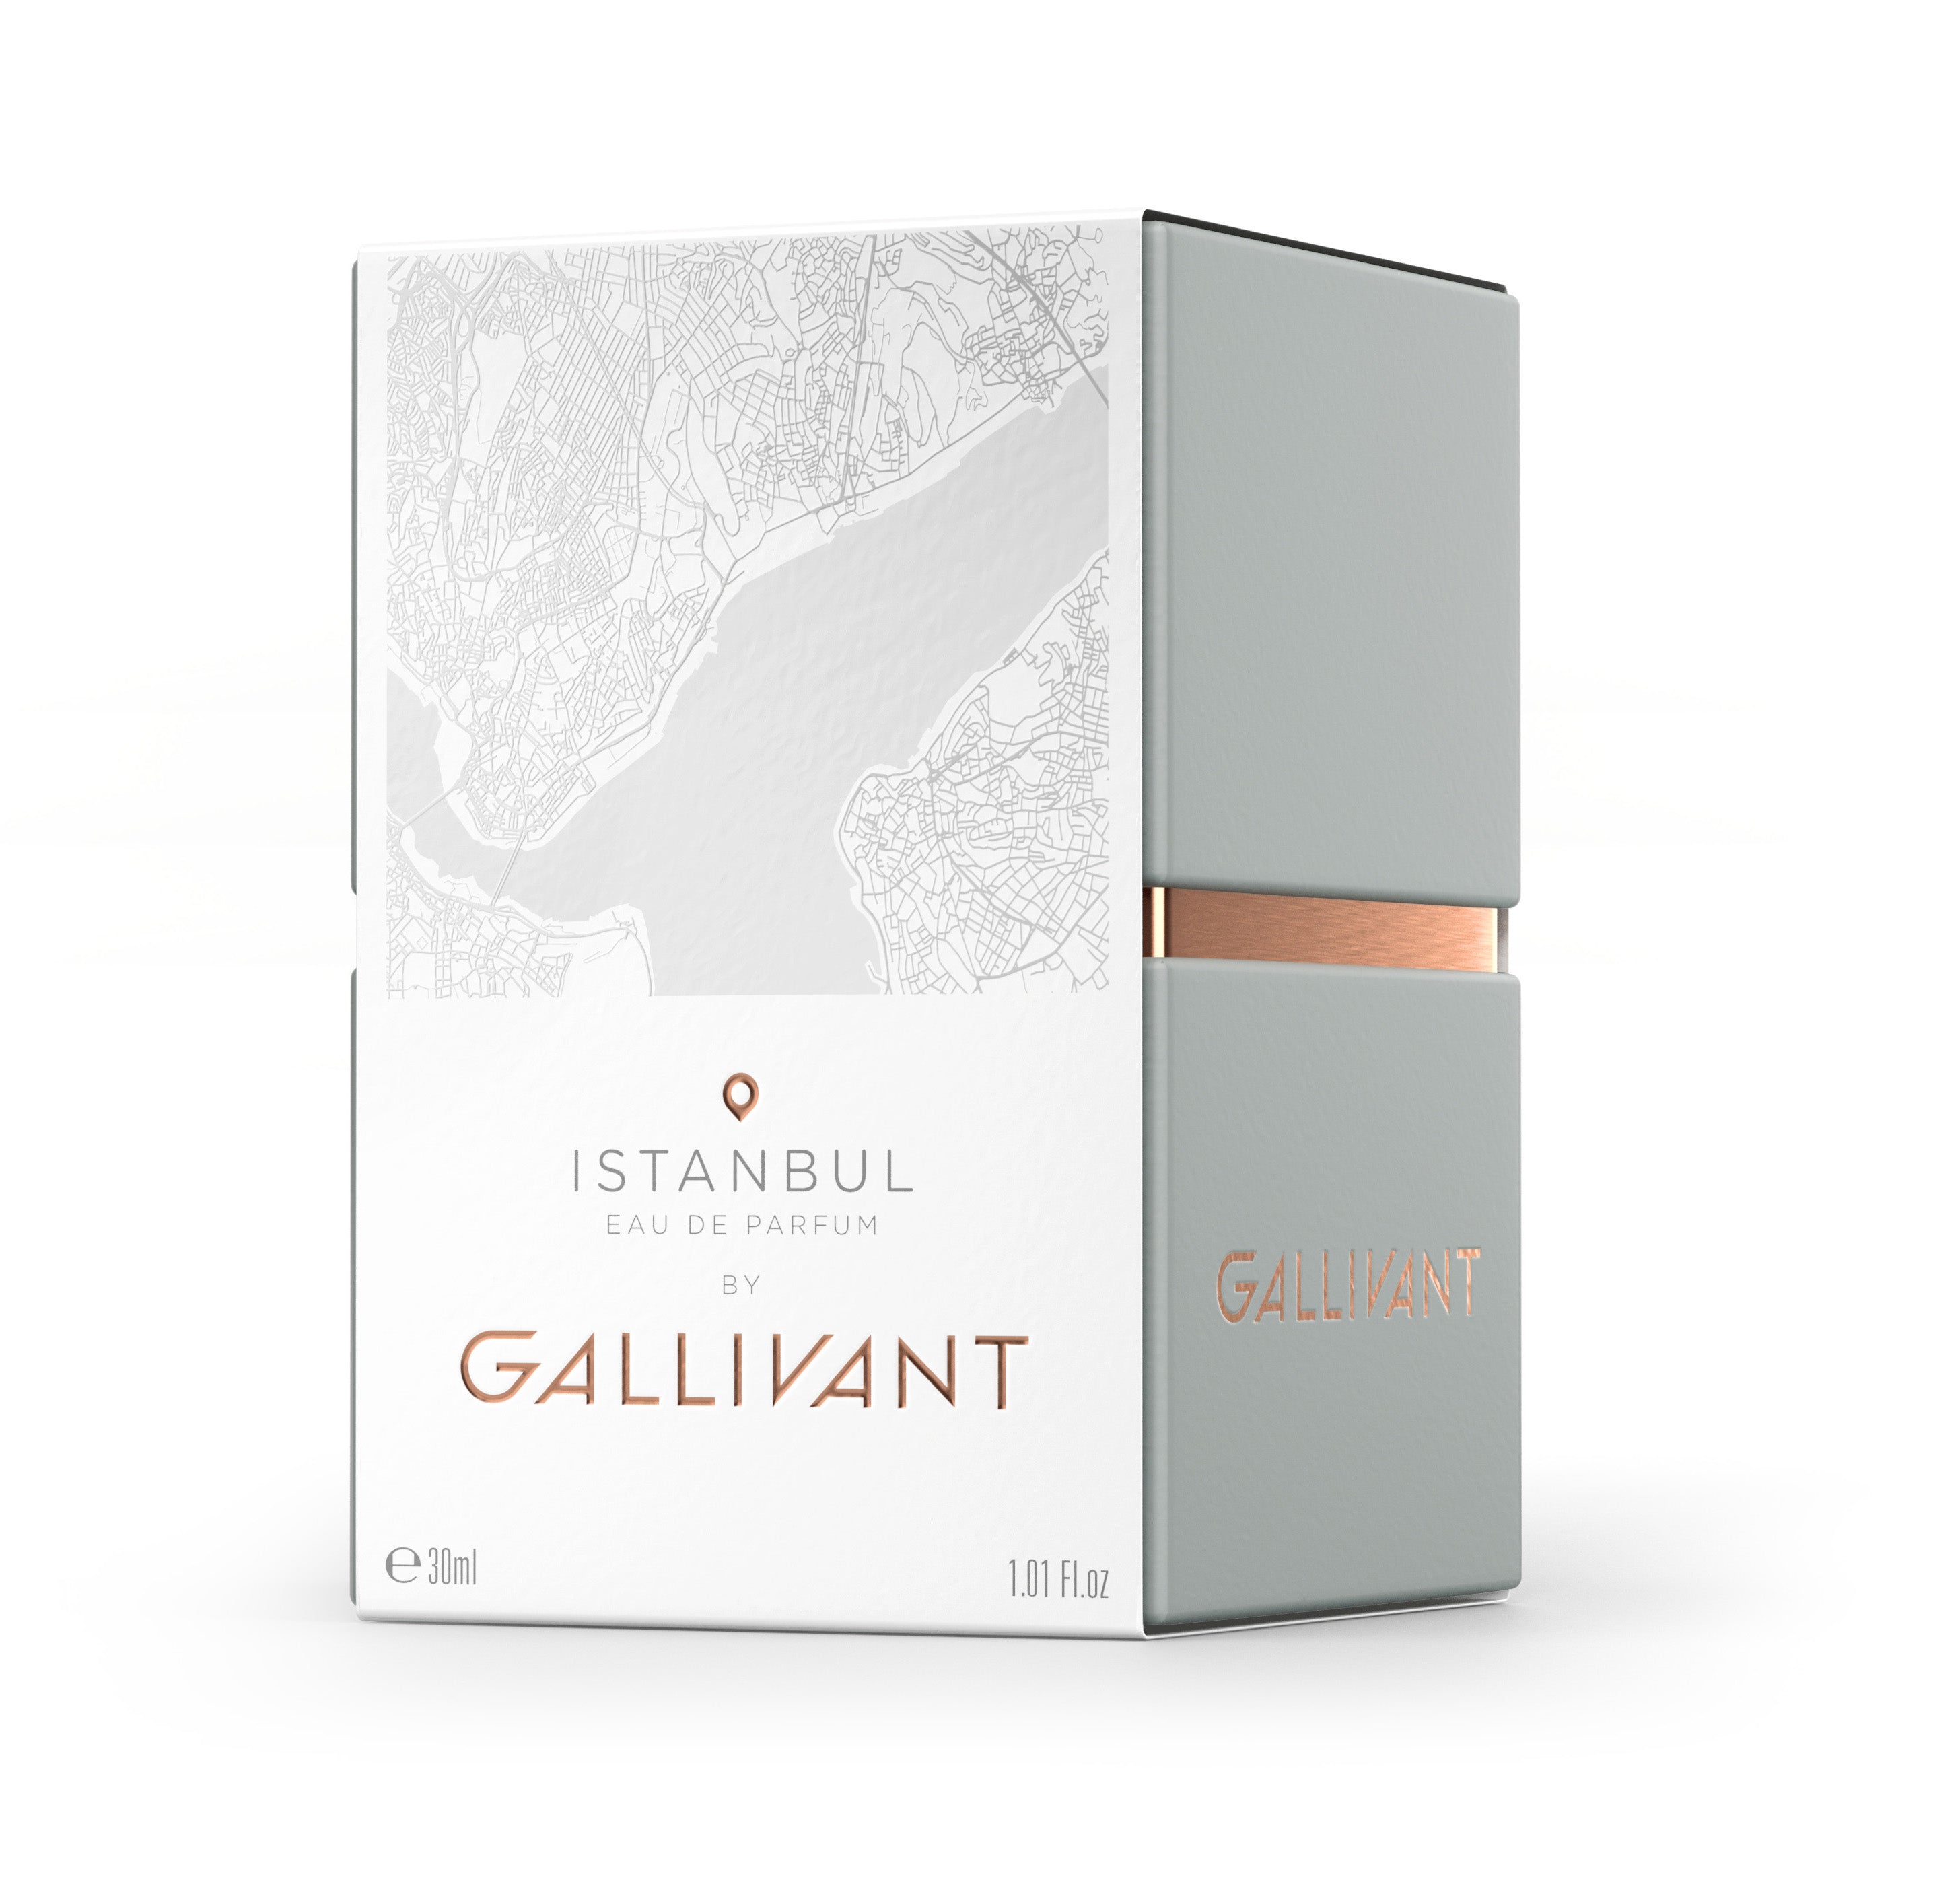 Box for Istanbul Eau de Parfum by Gallivant